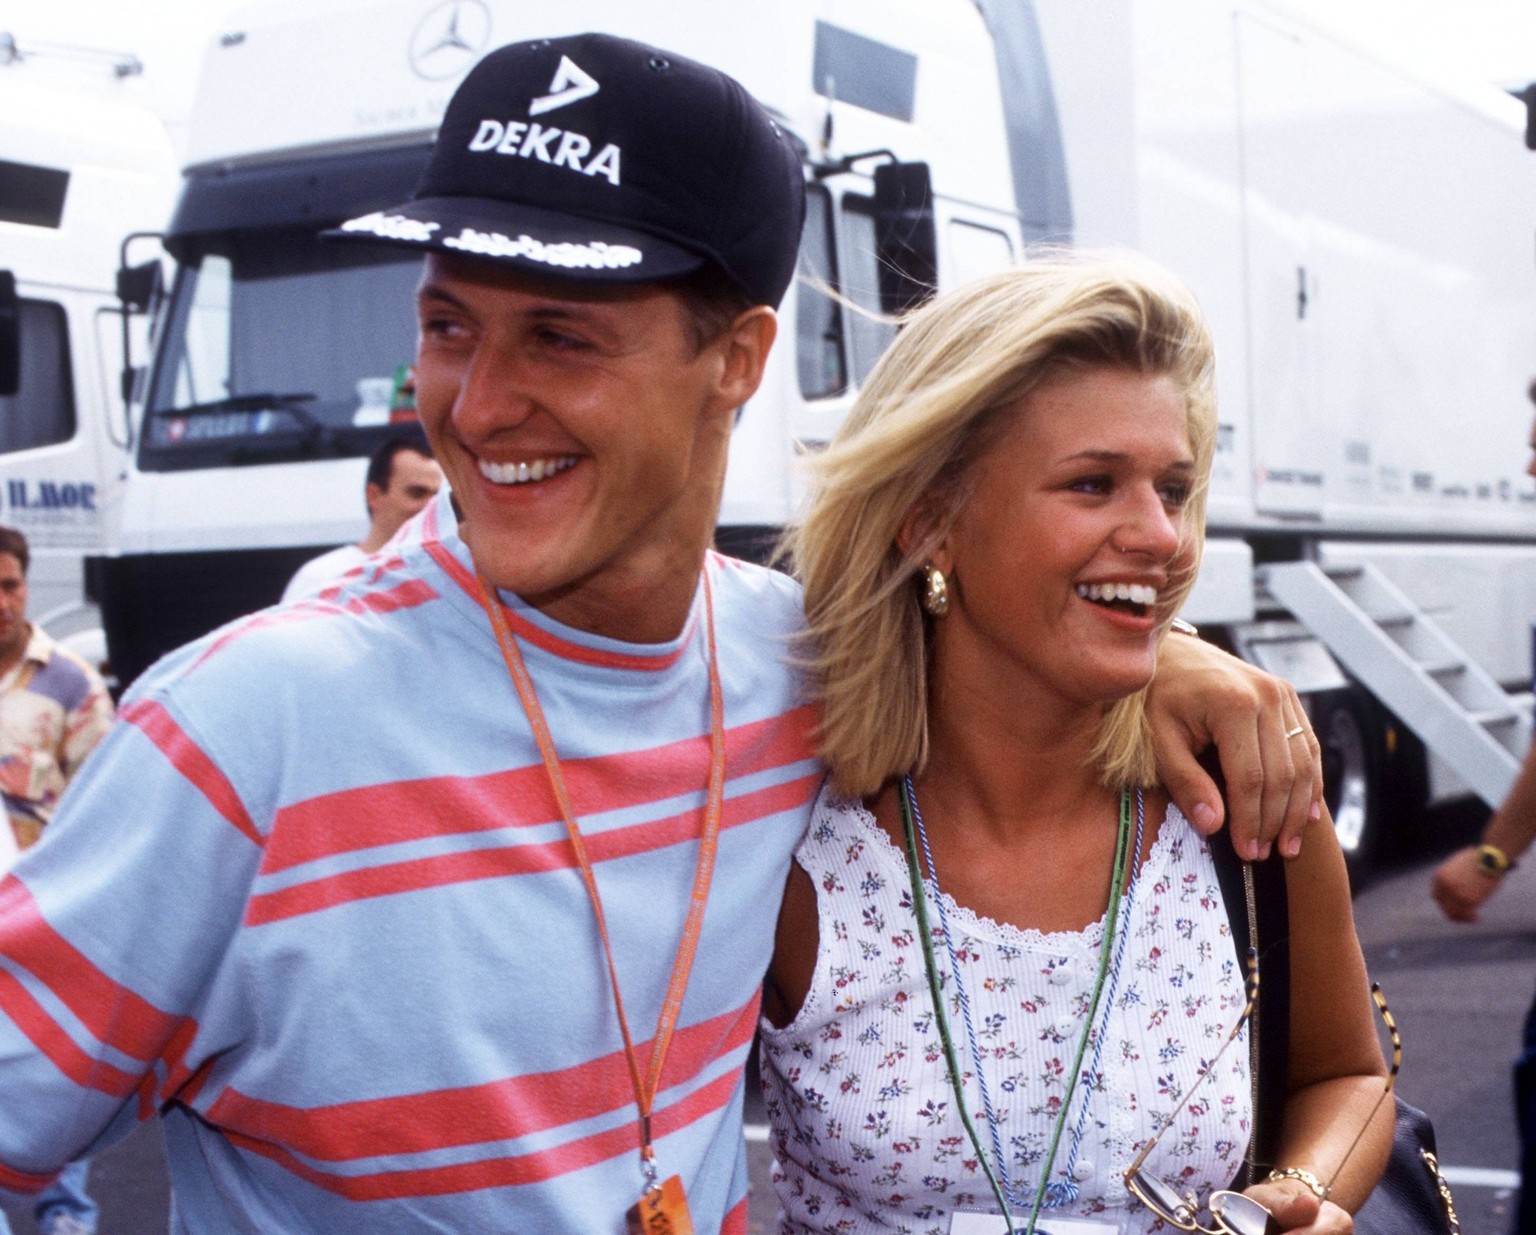 Michael Schumacher und Frau Corinna (re) fotografiert im Team Benetton Renault von 1996-2005. Michael Schumacher und Frau Corinna (re) fotografiert im Team Benetton Renault von 1996-2005.